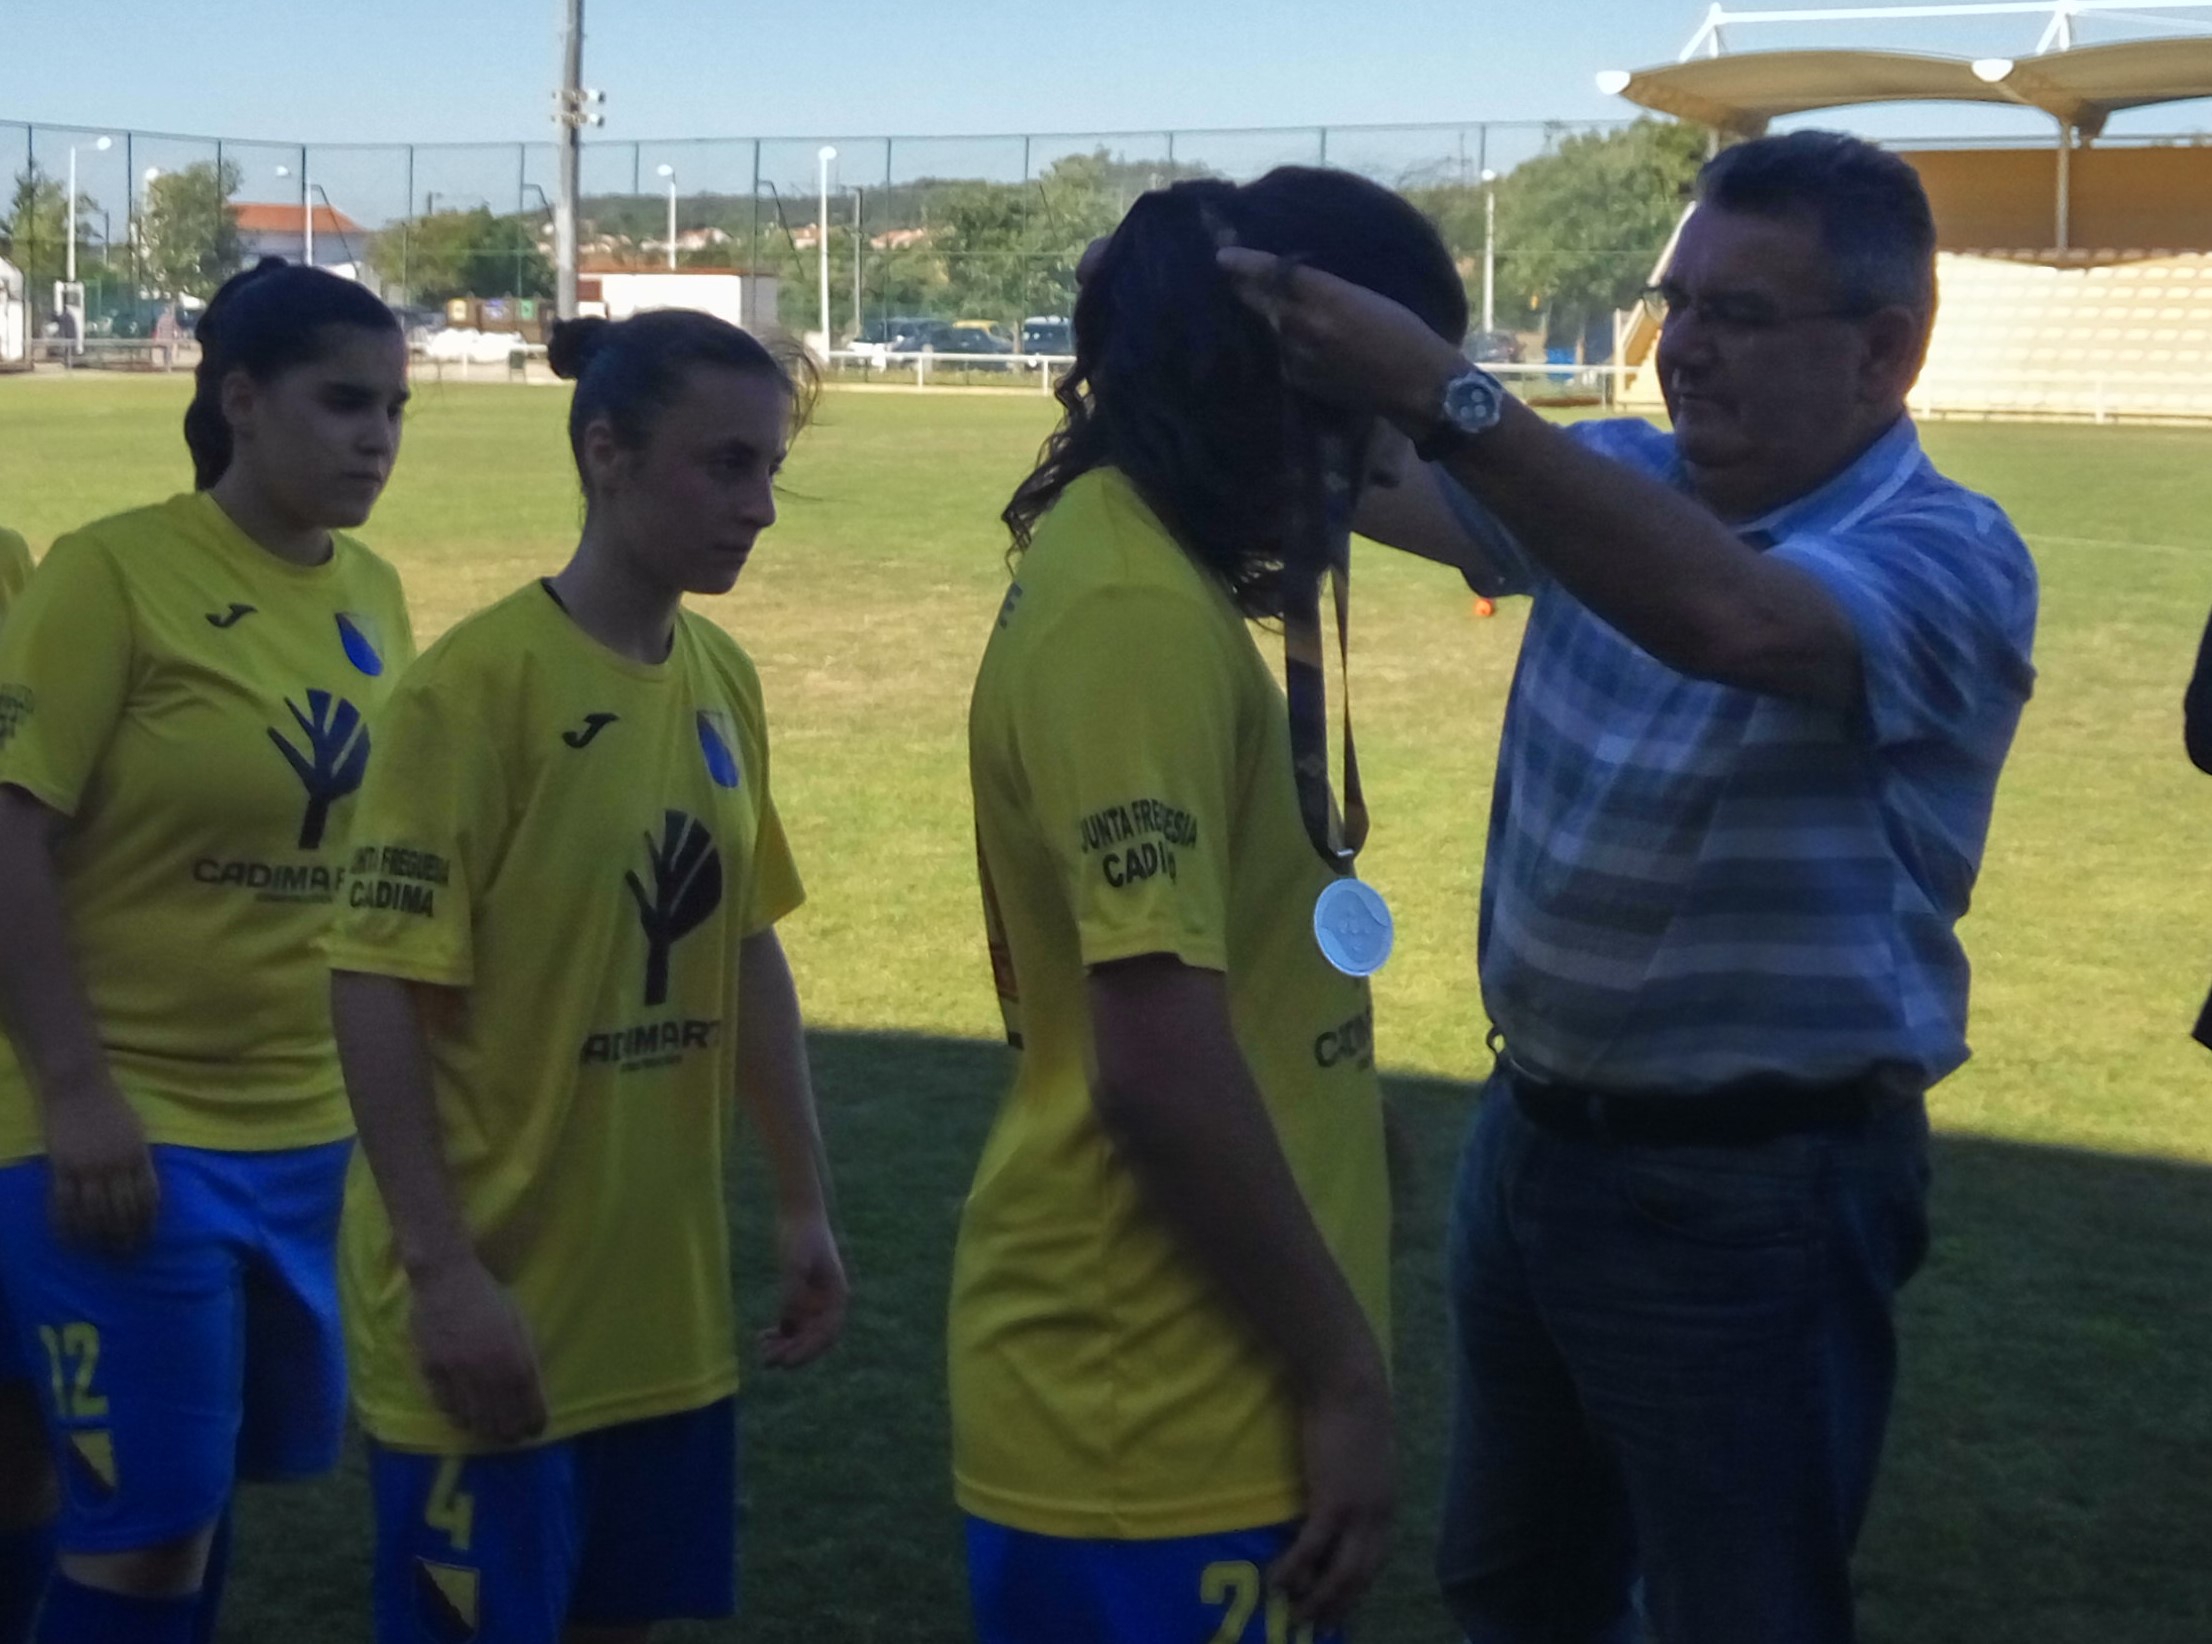 Francisco Cardoso: “Feito do Quintajense FC deve motivar aumento da prática no feminino”